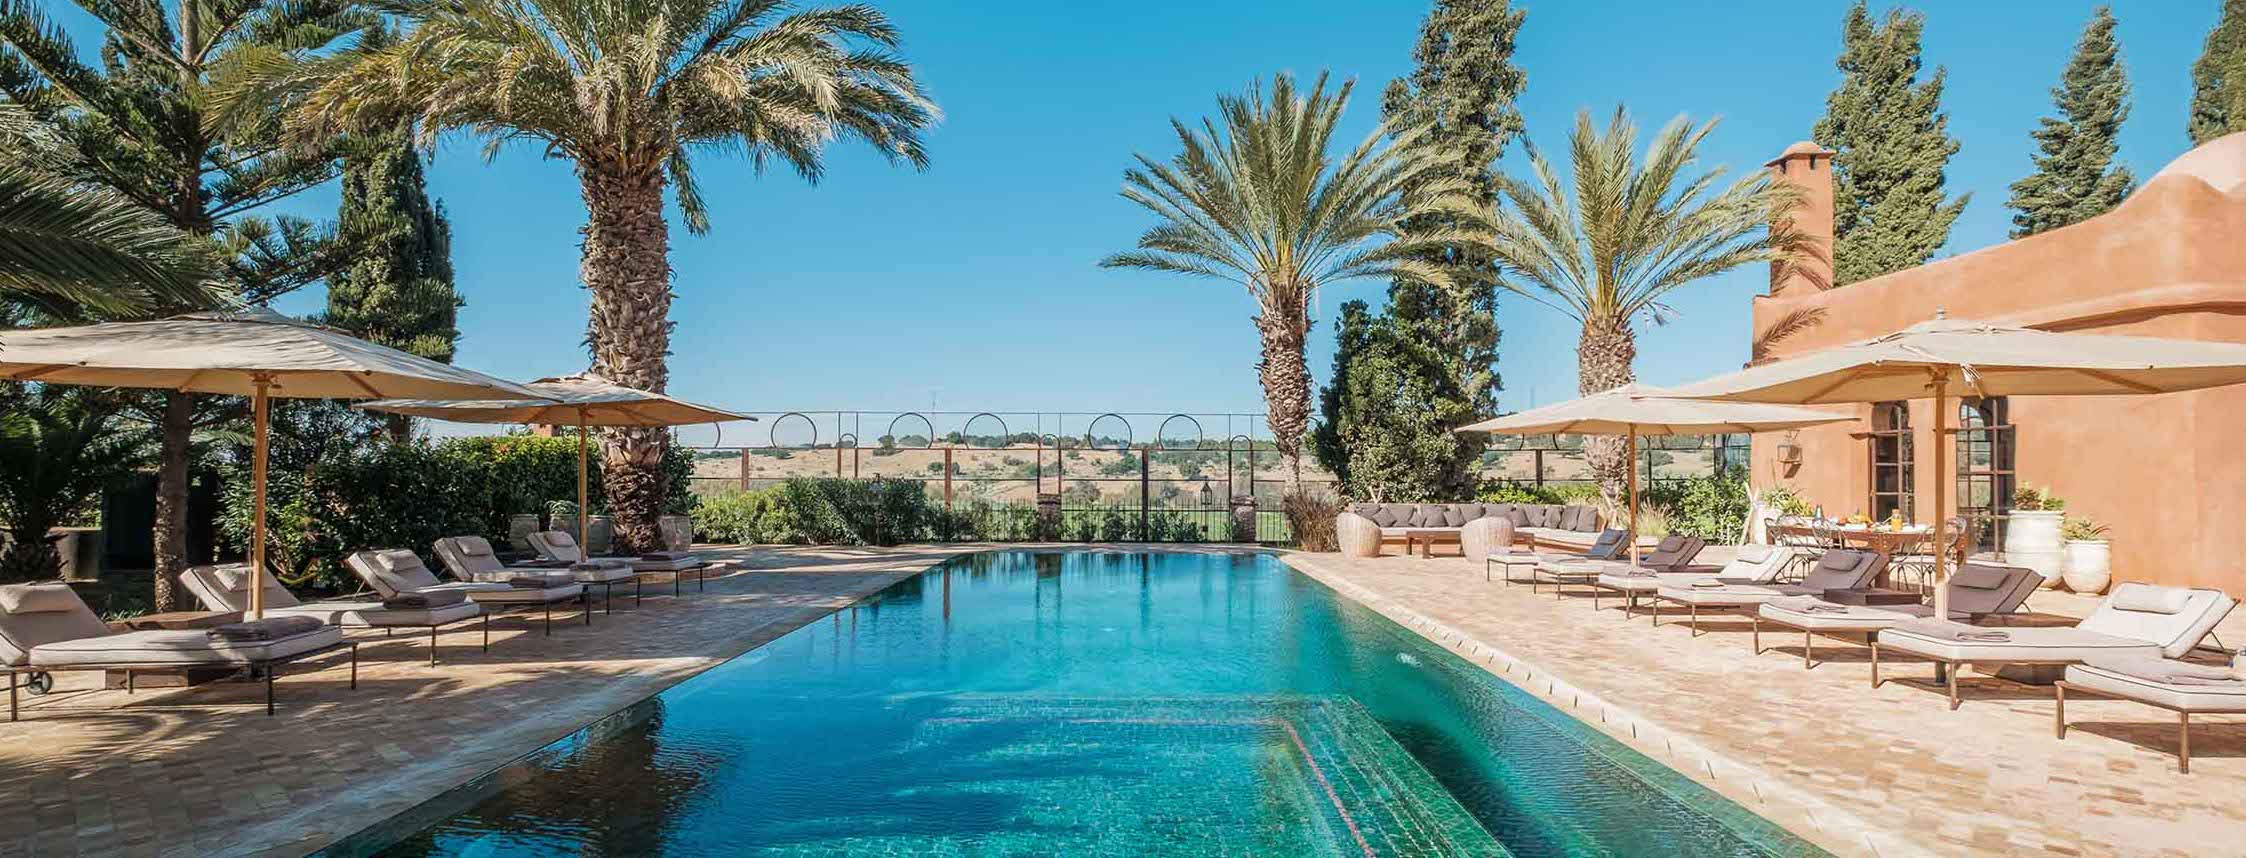 hotel-villa-saada-colline-piscine-essouira-maroc-myprivatexperience